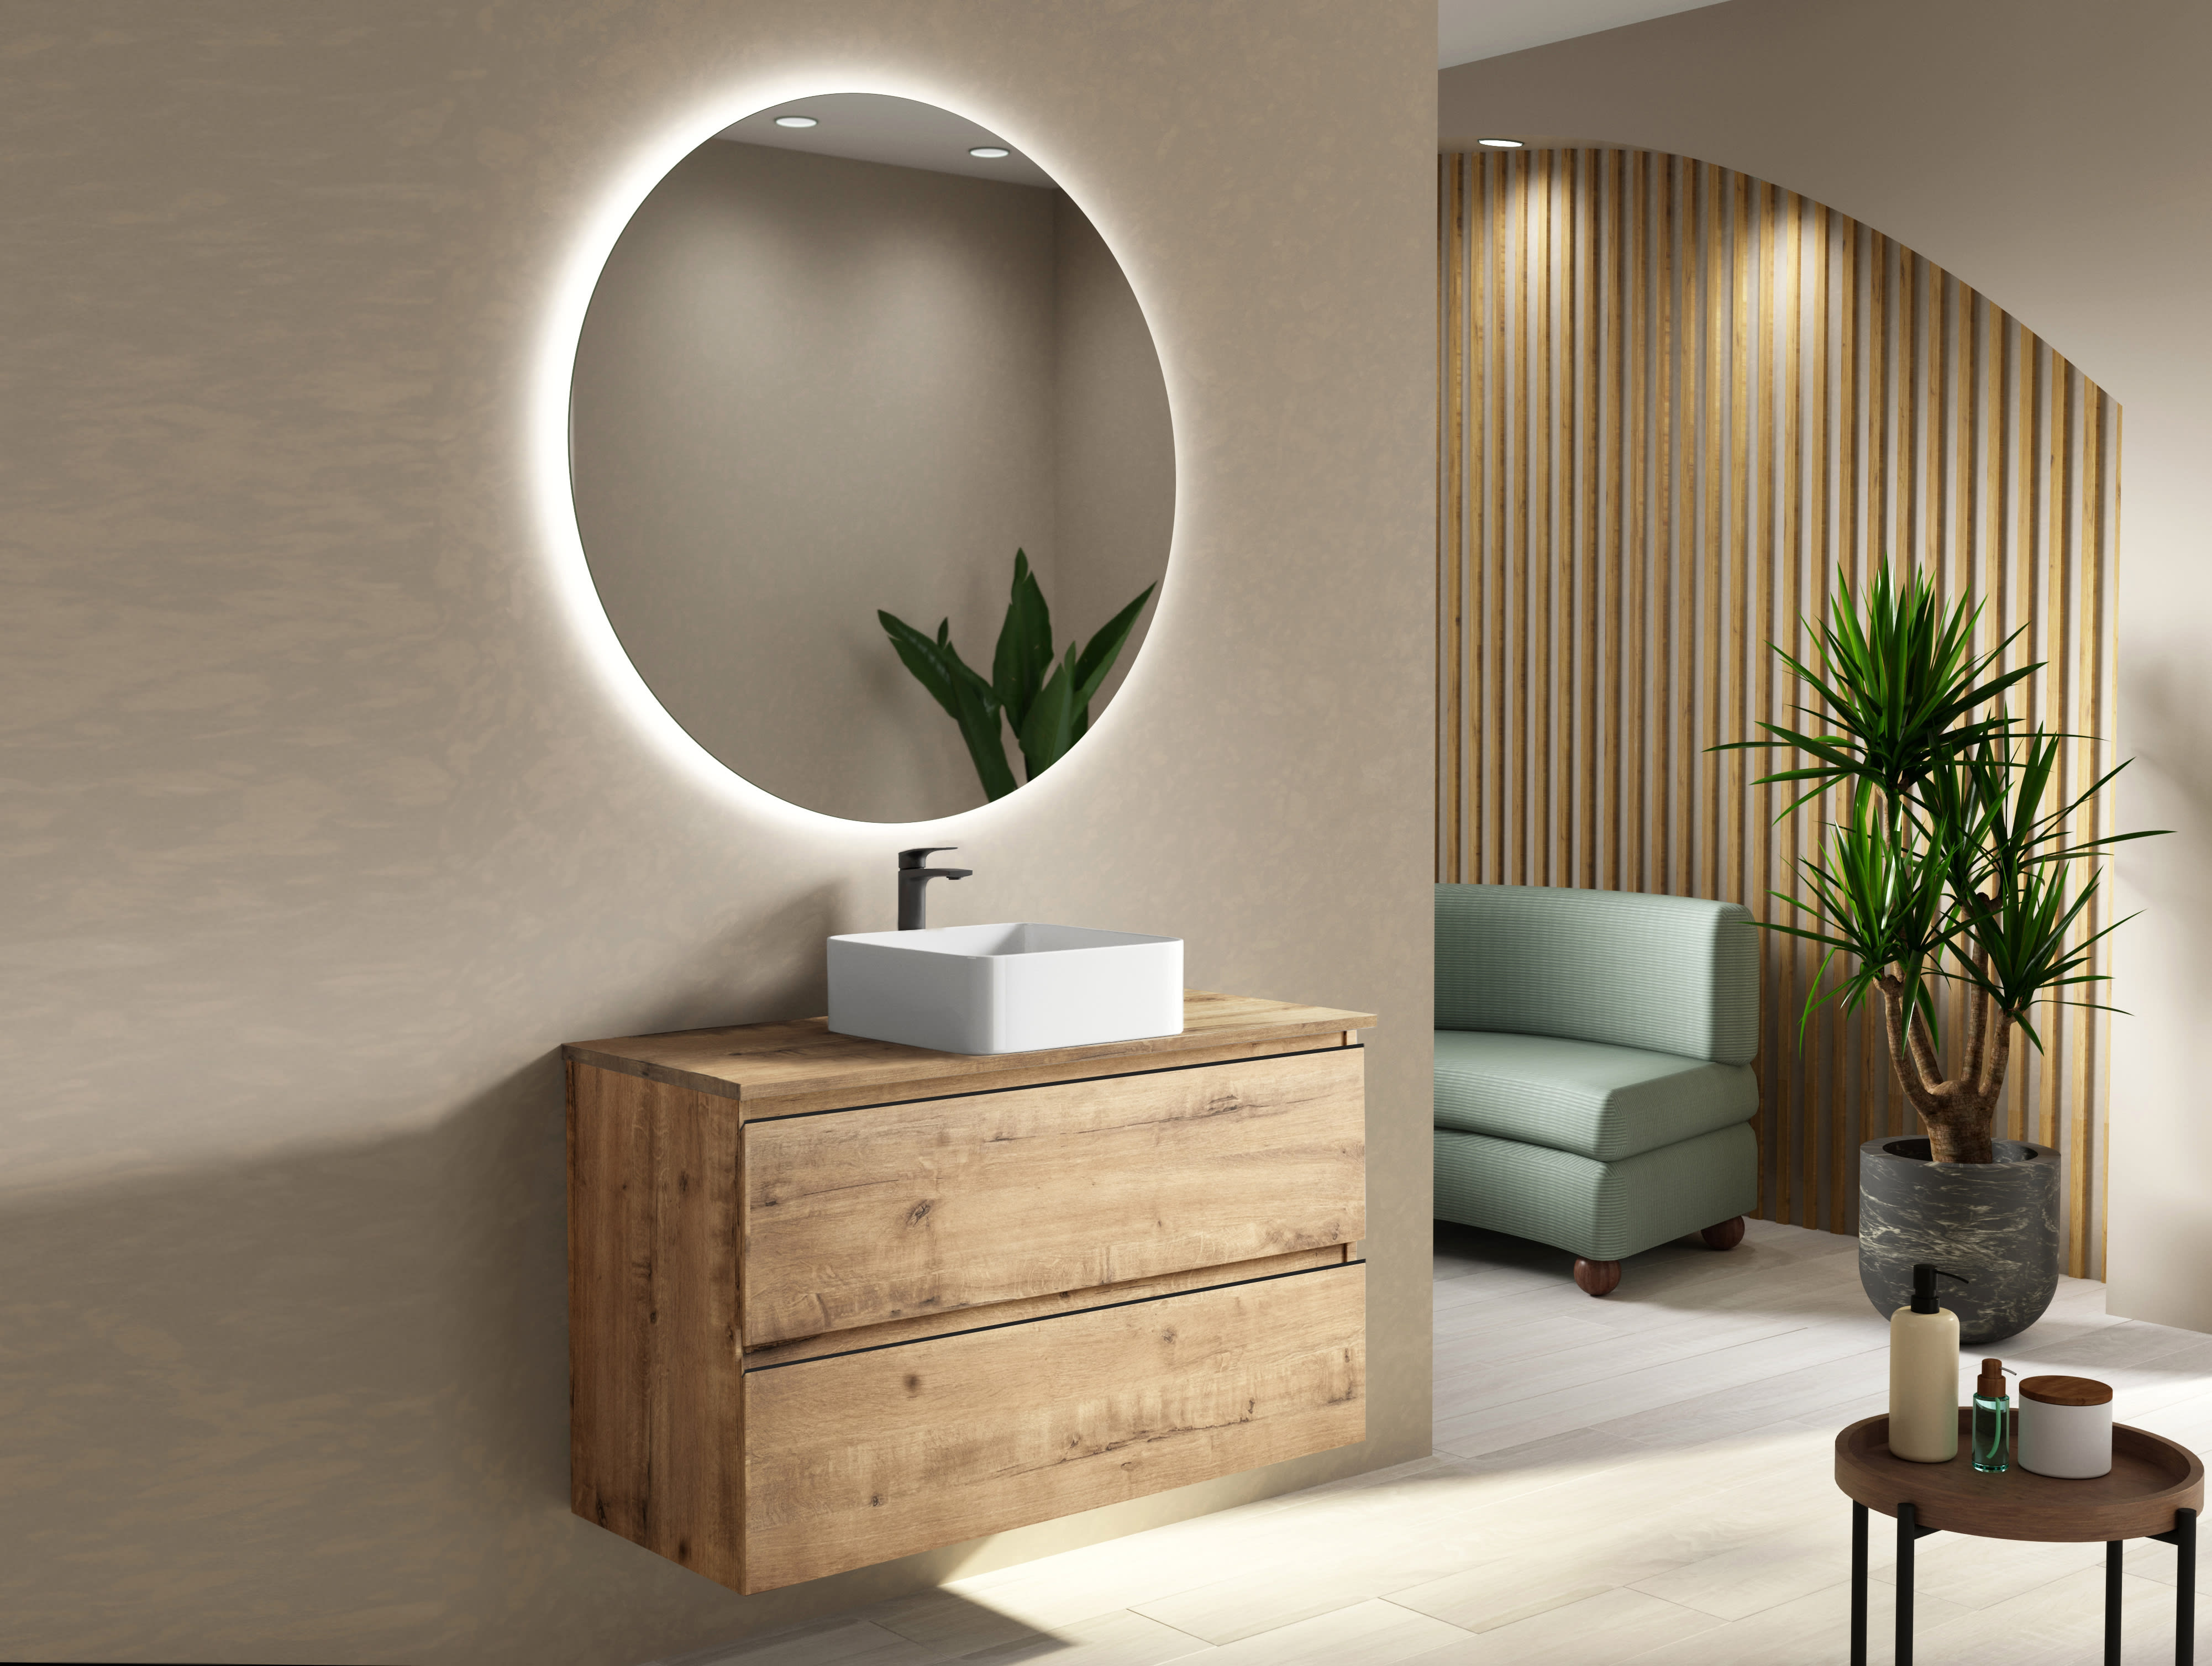 Mueble baño modelo GRANADA 60cm CON PATAS lavabo SOBRE ENCIMERA diseño y  calidad sólo en ASEALIA.